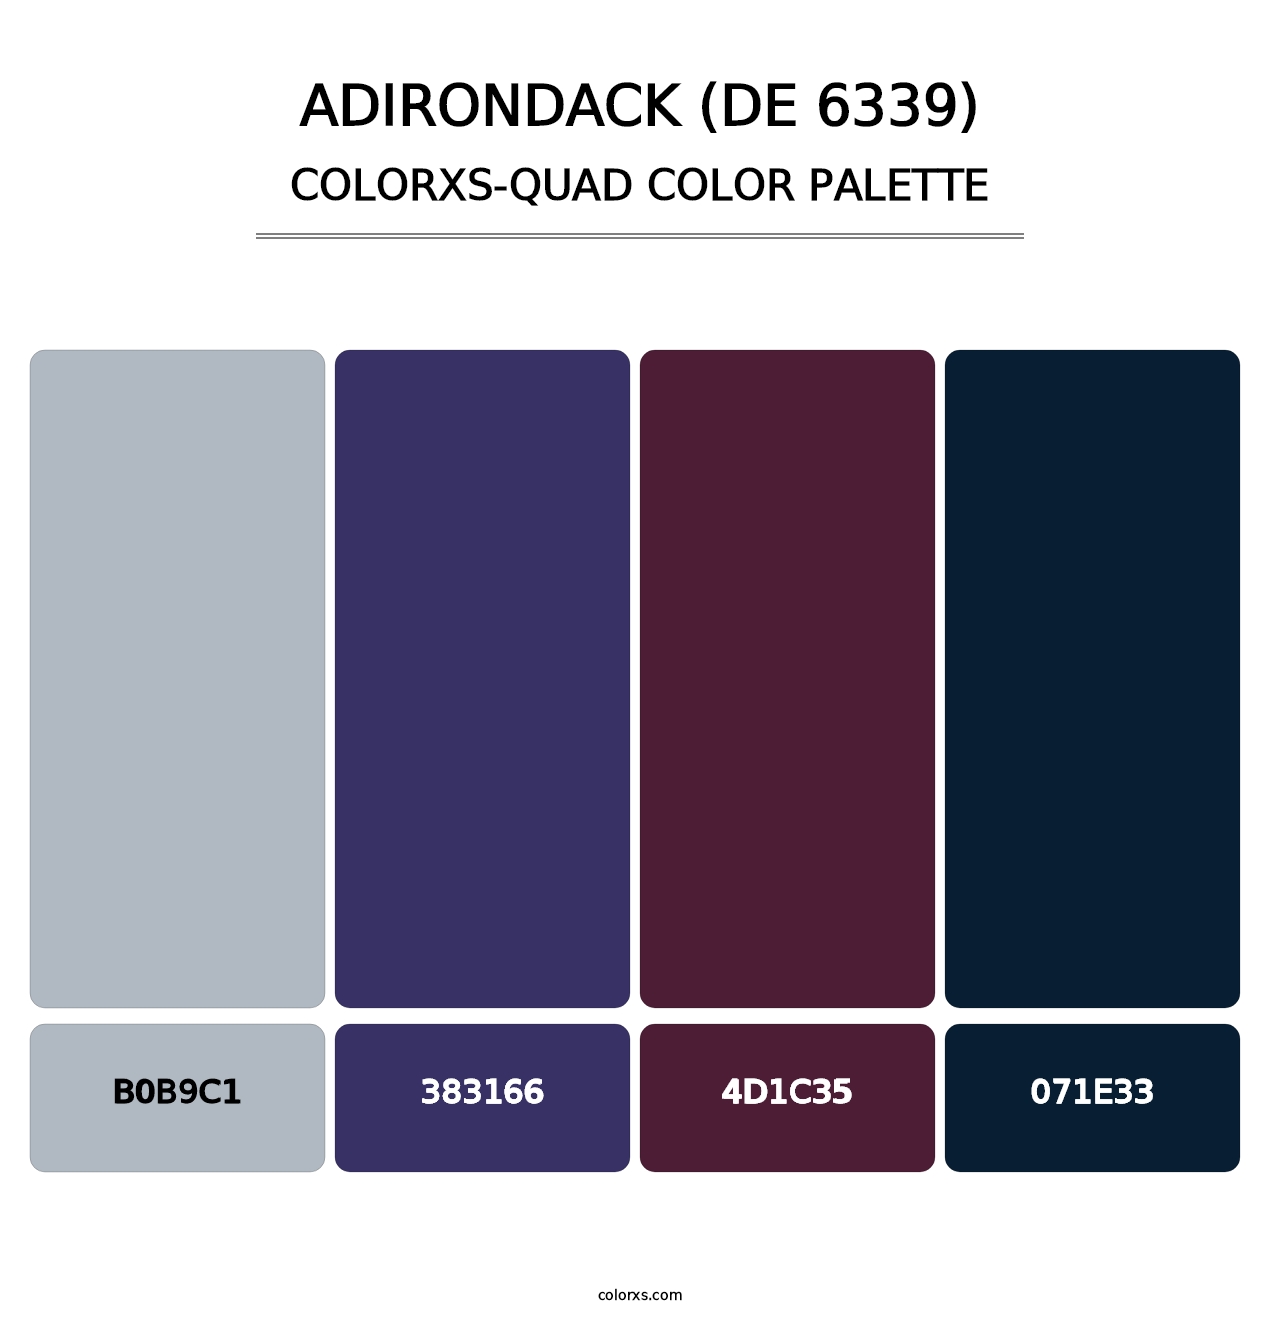 Adirondack (DE 6339) - Colorxs Quad Palette